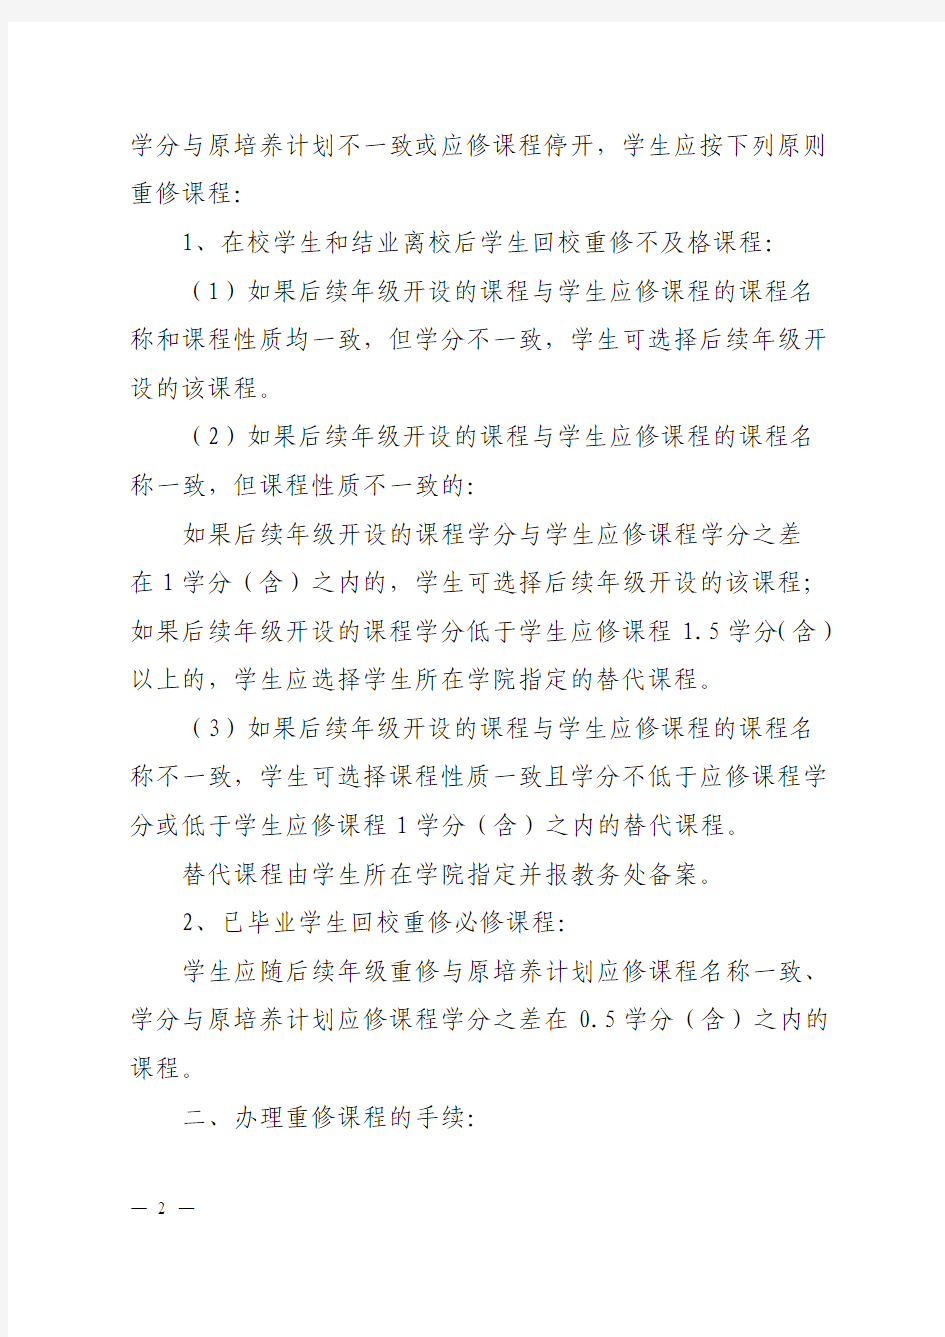 北京信息科技大学学生课程重修的暂行办法